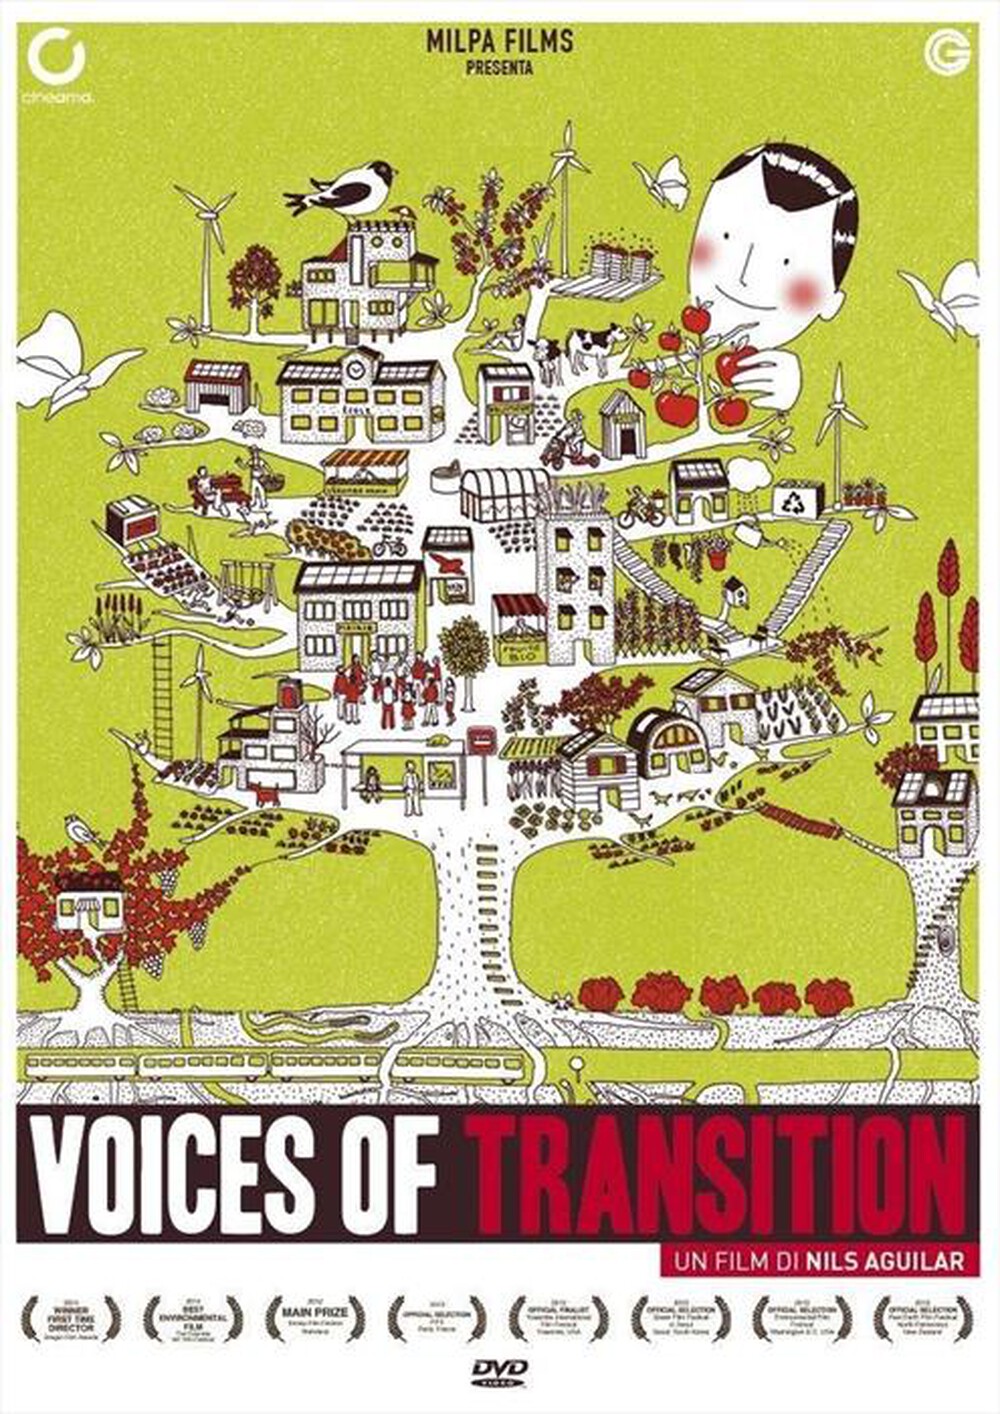 "CECCHI GORI - Voices Of Transition"